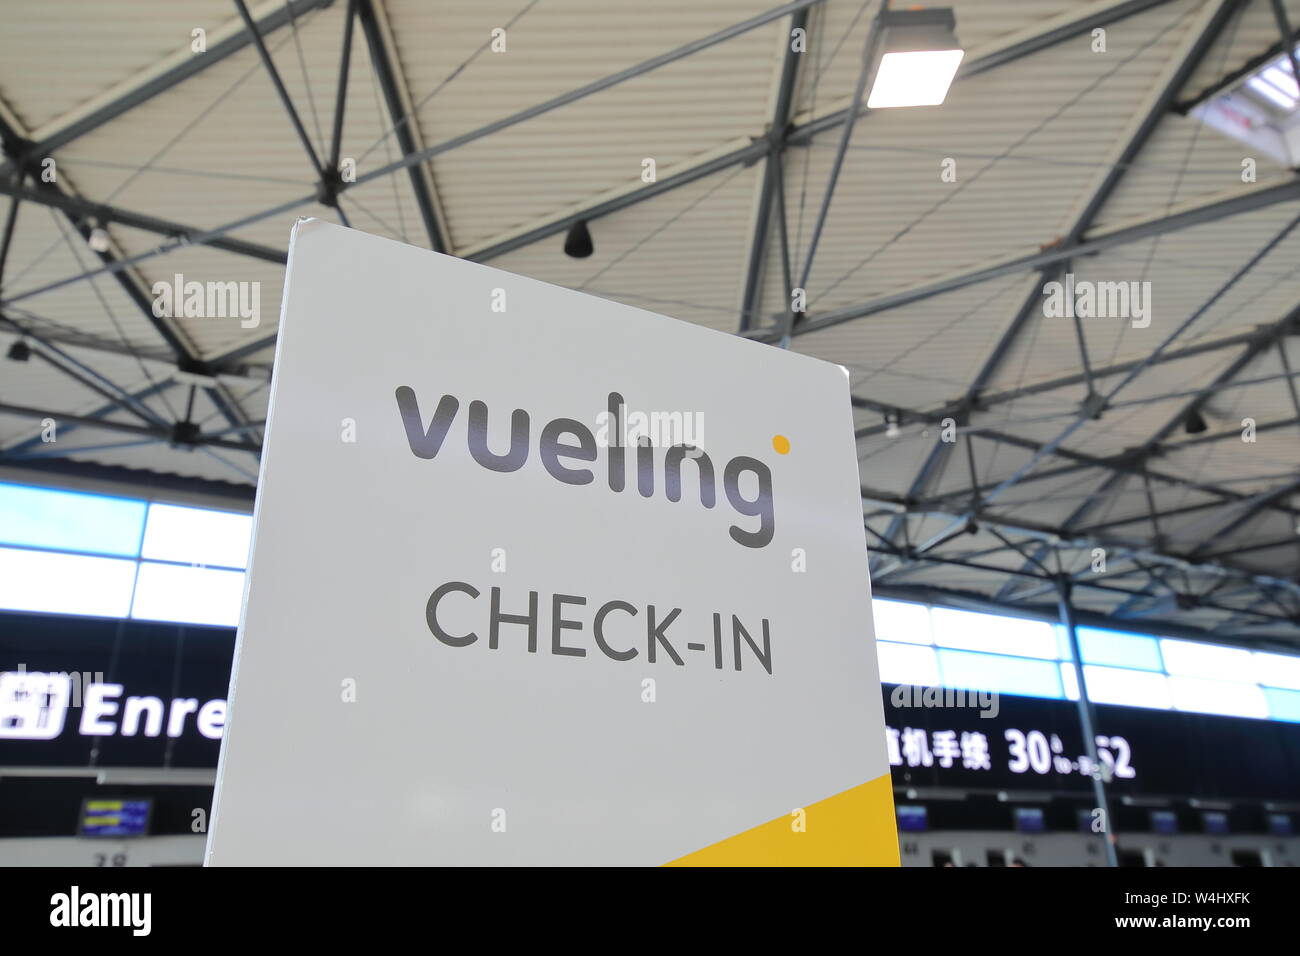 Vueling Airline Check-in Schalter der Flughafen Paris Charles de Gaulle  Paris Frankreich Stockfotografie - Alamy